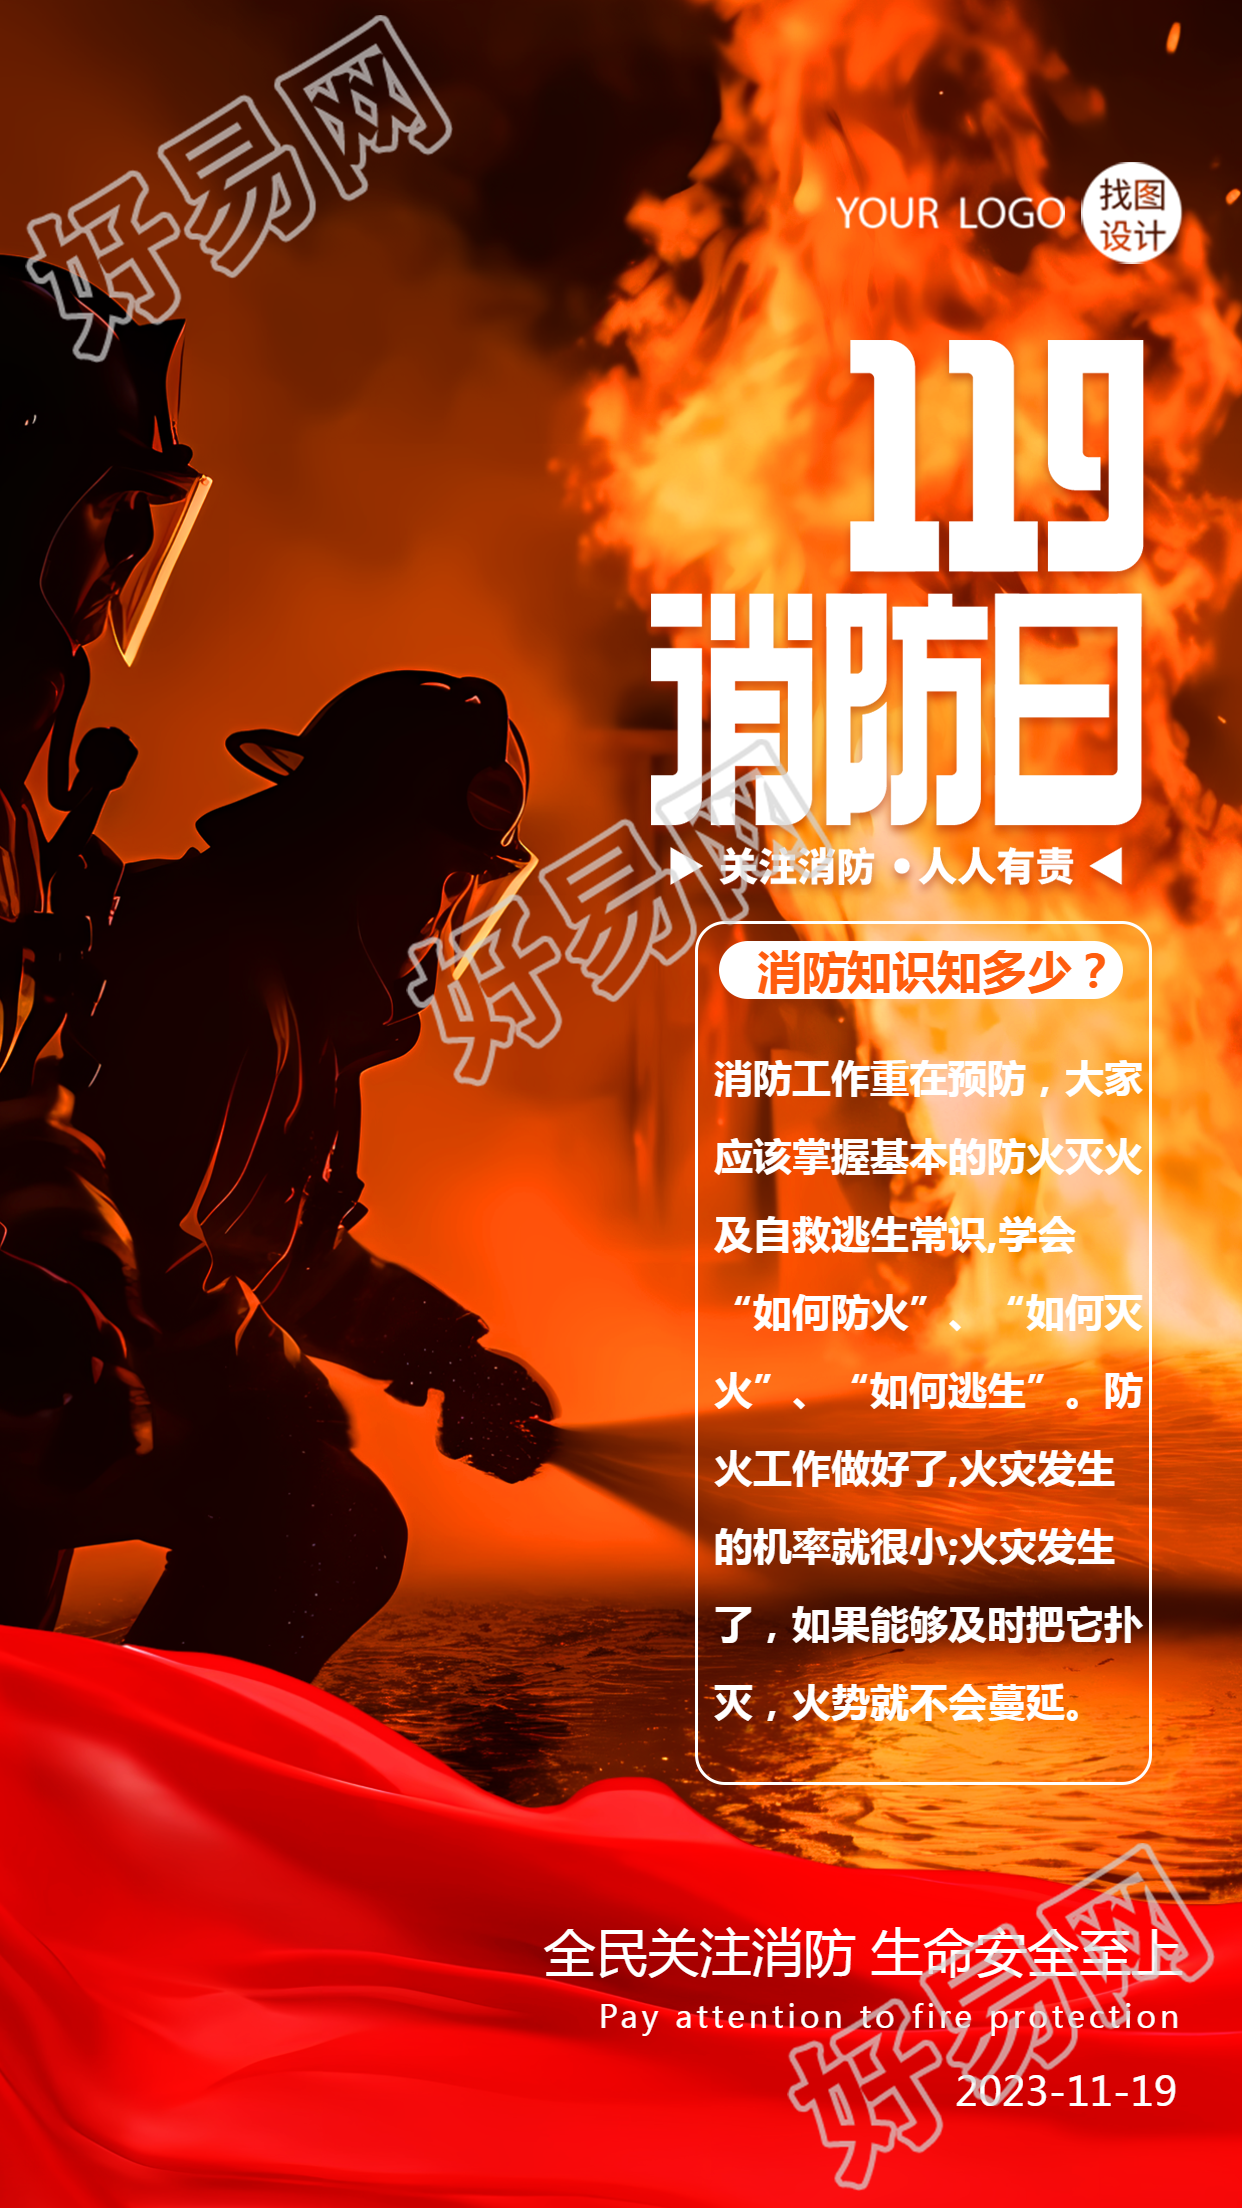 119消防日消防知识科普创意实景手机海报